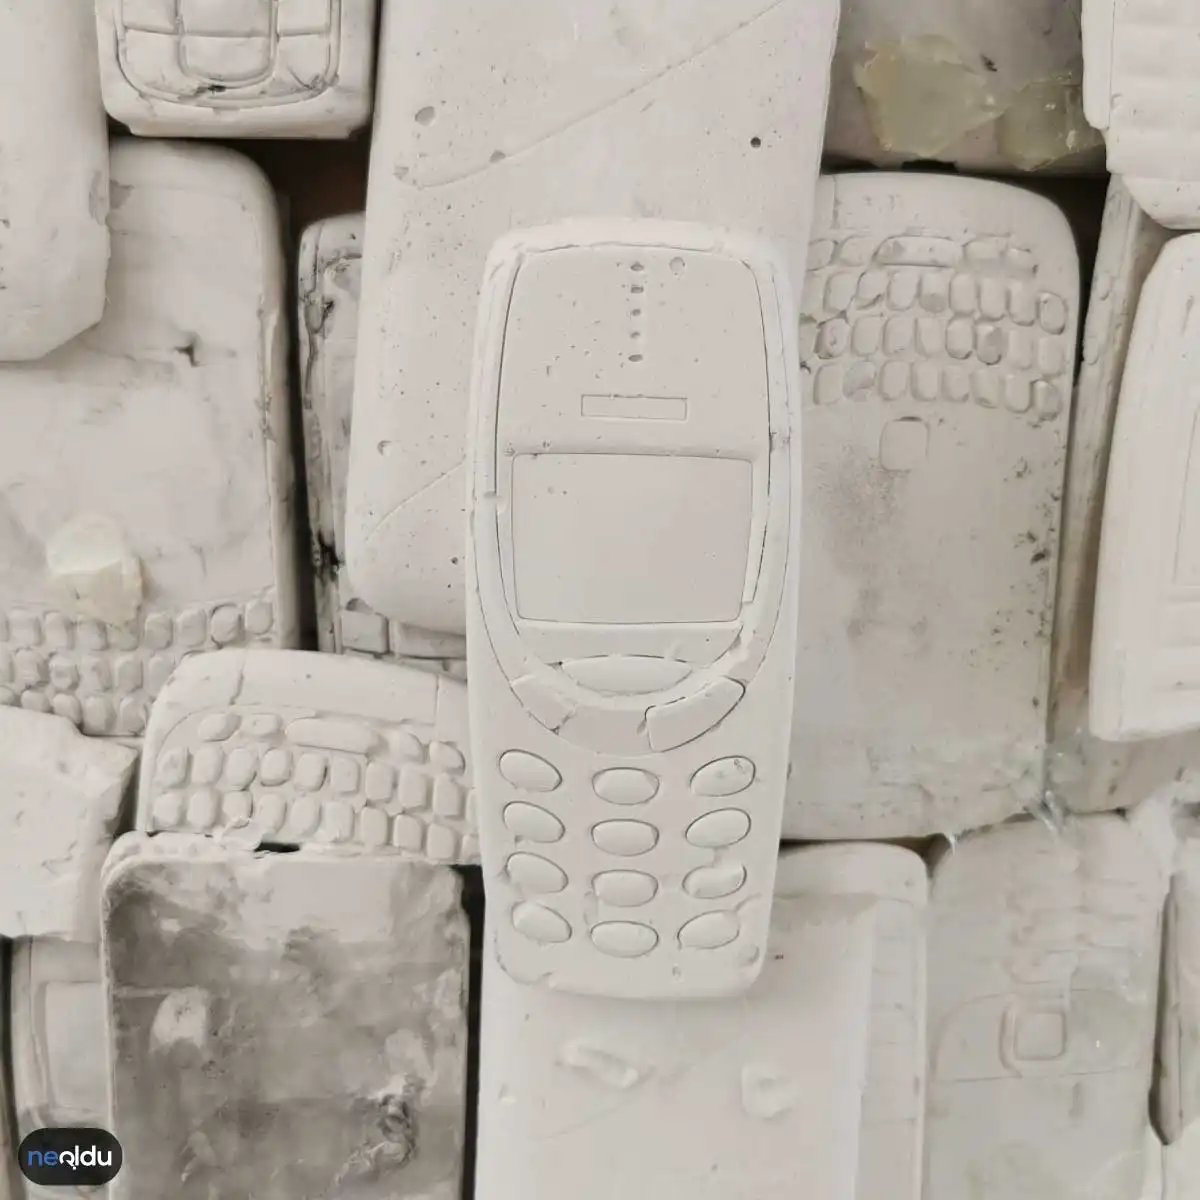 Nokia 3310 Hakkında Bilgiler